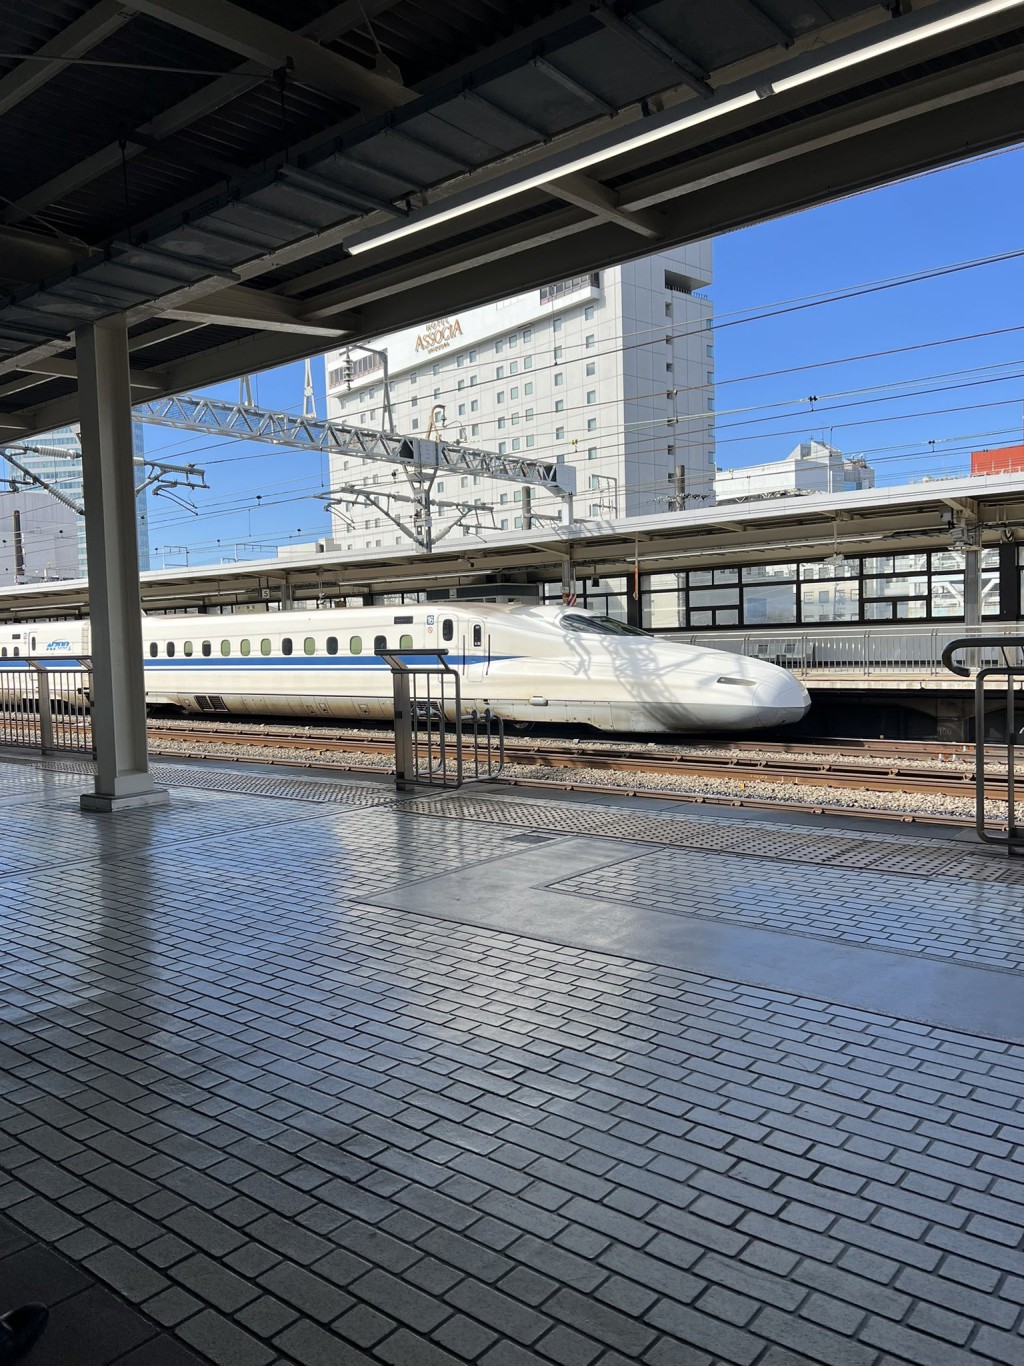 日本JR靜岡站有僧人跳落路軌找手機，導致新幹線部份列車受阻。